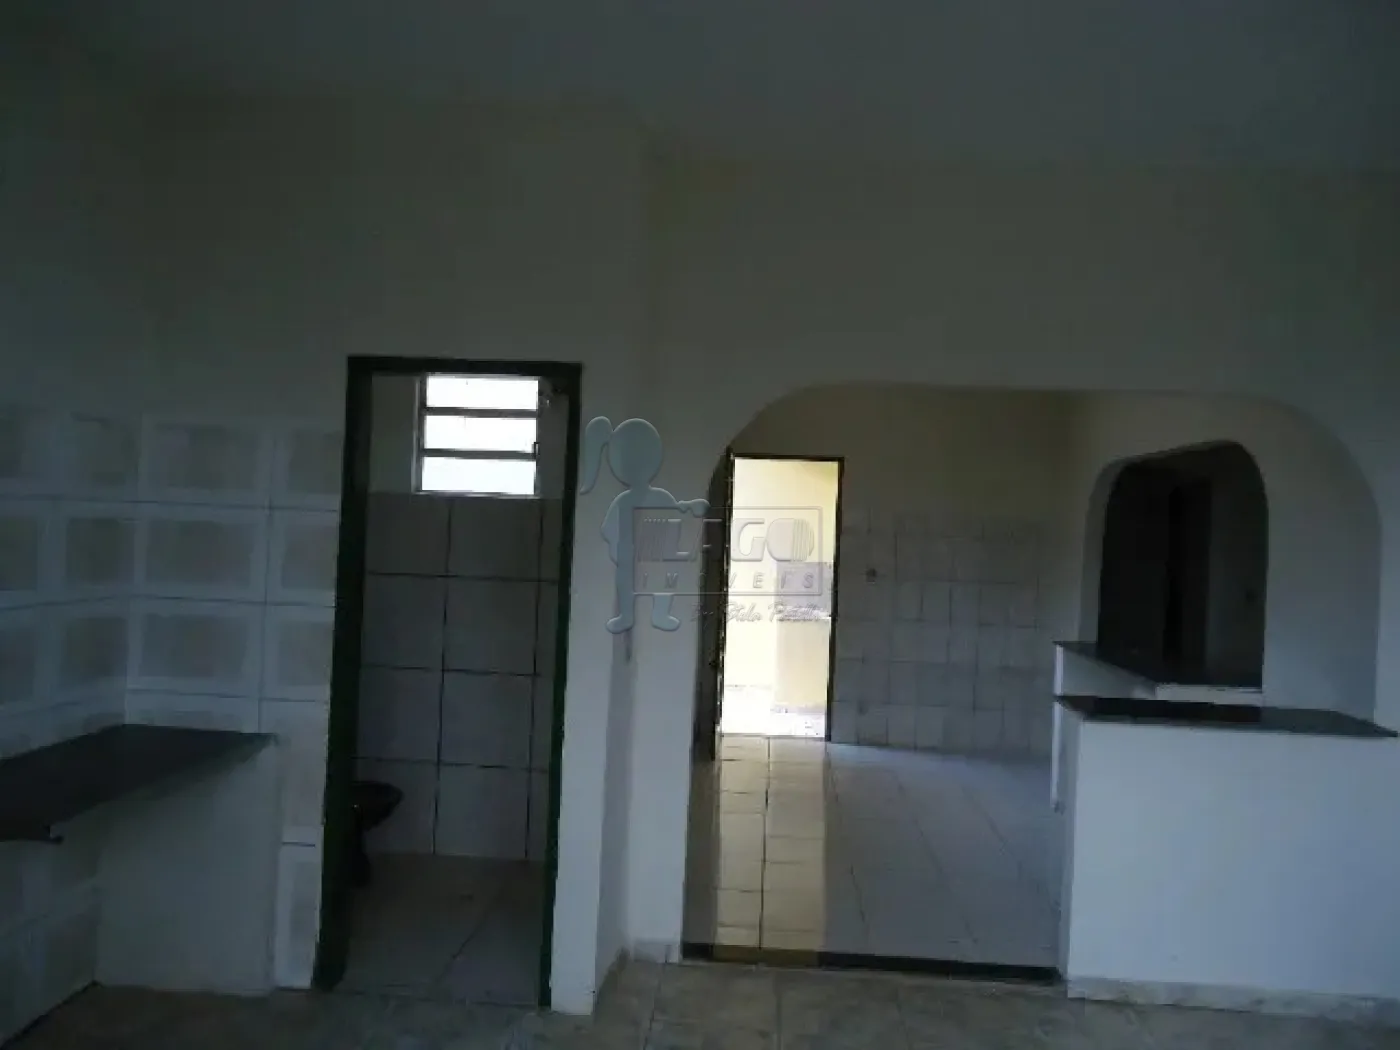 Comprar Casas / Padrão em Ribeirão Preto R$ 265.000,00 - Foto 6